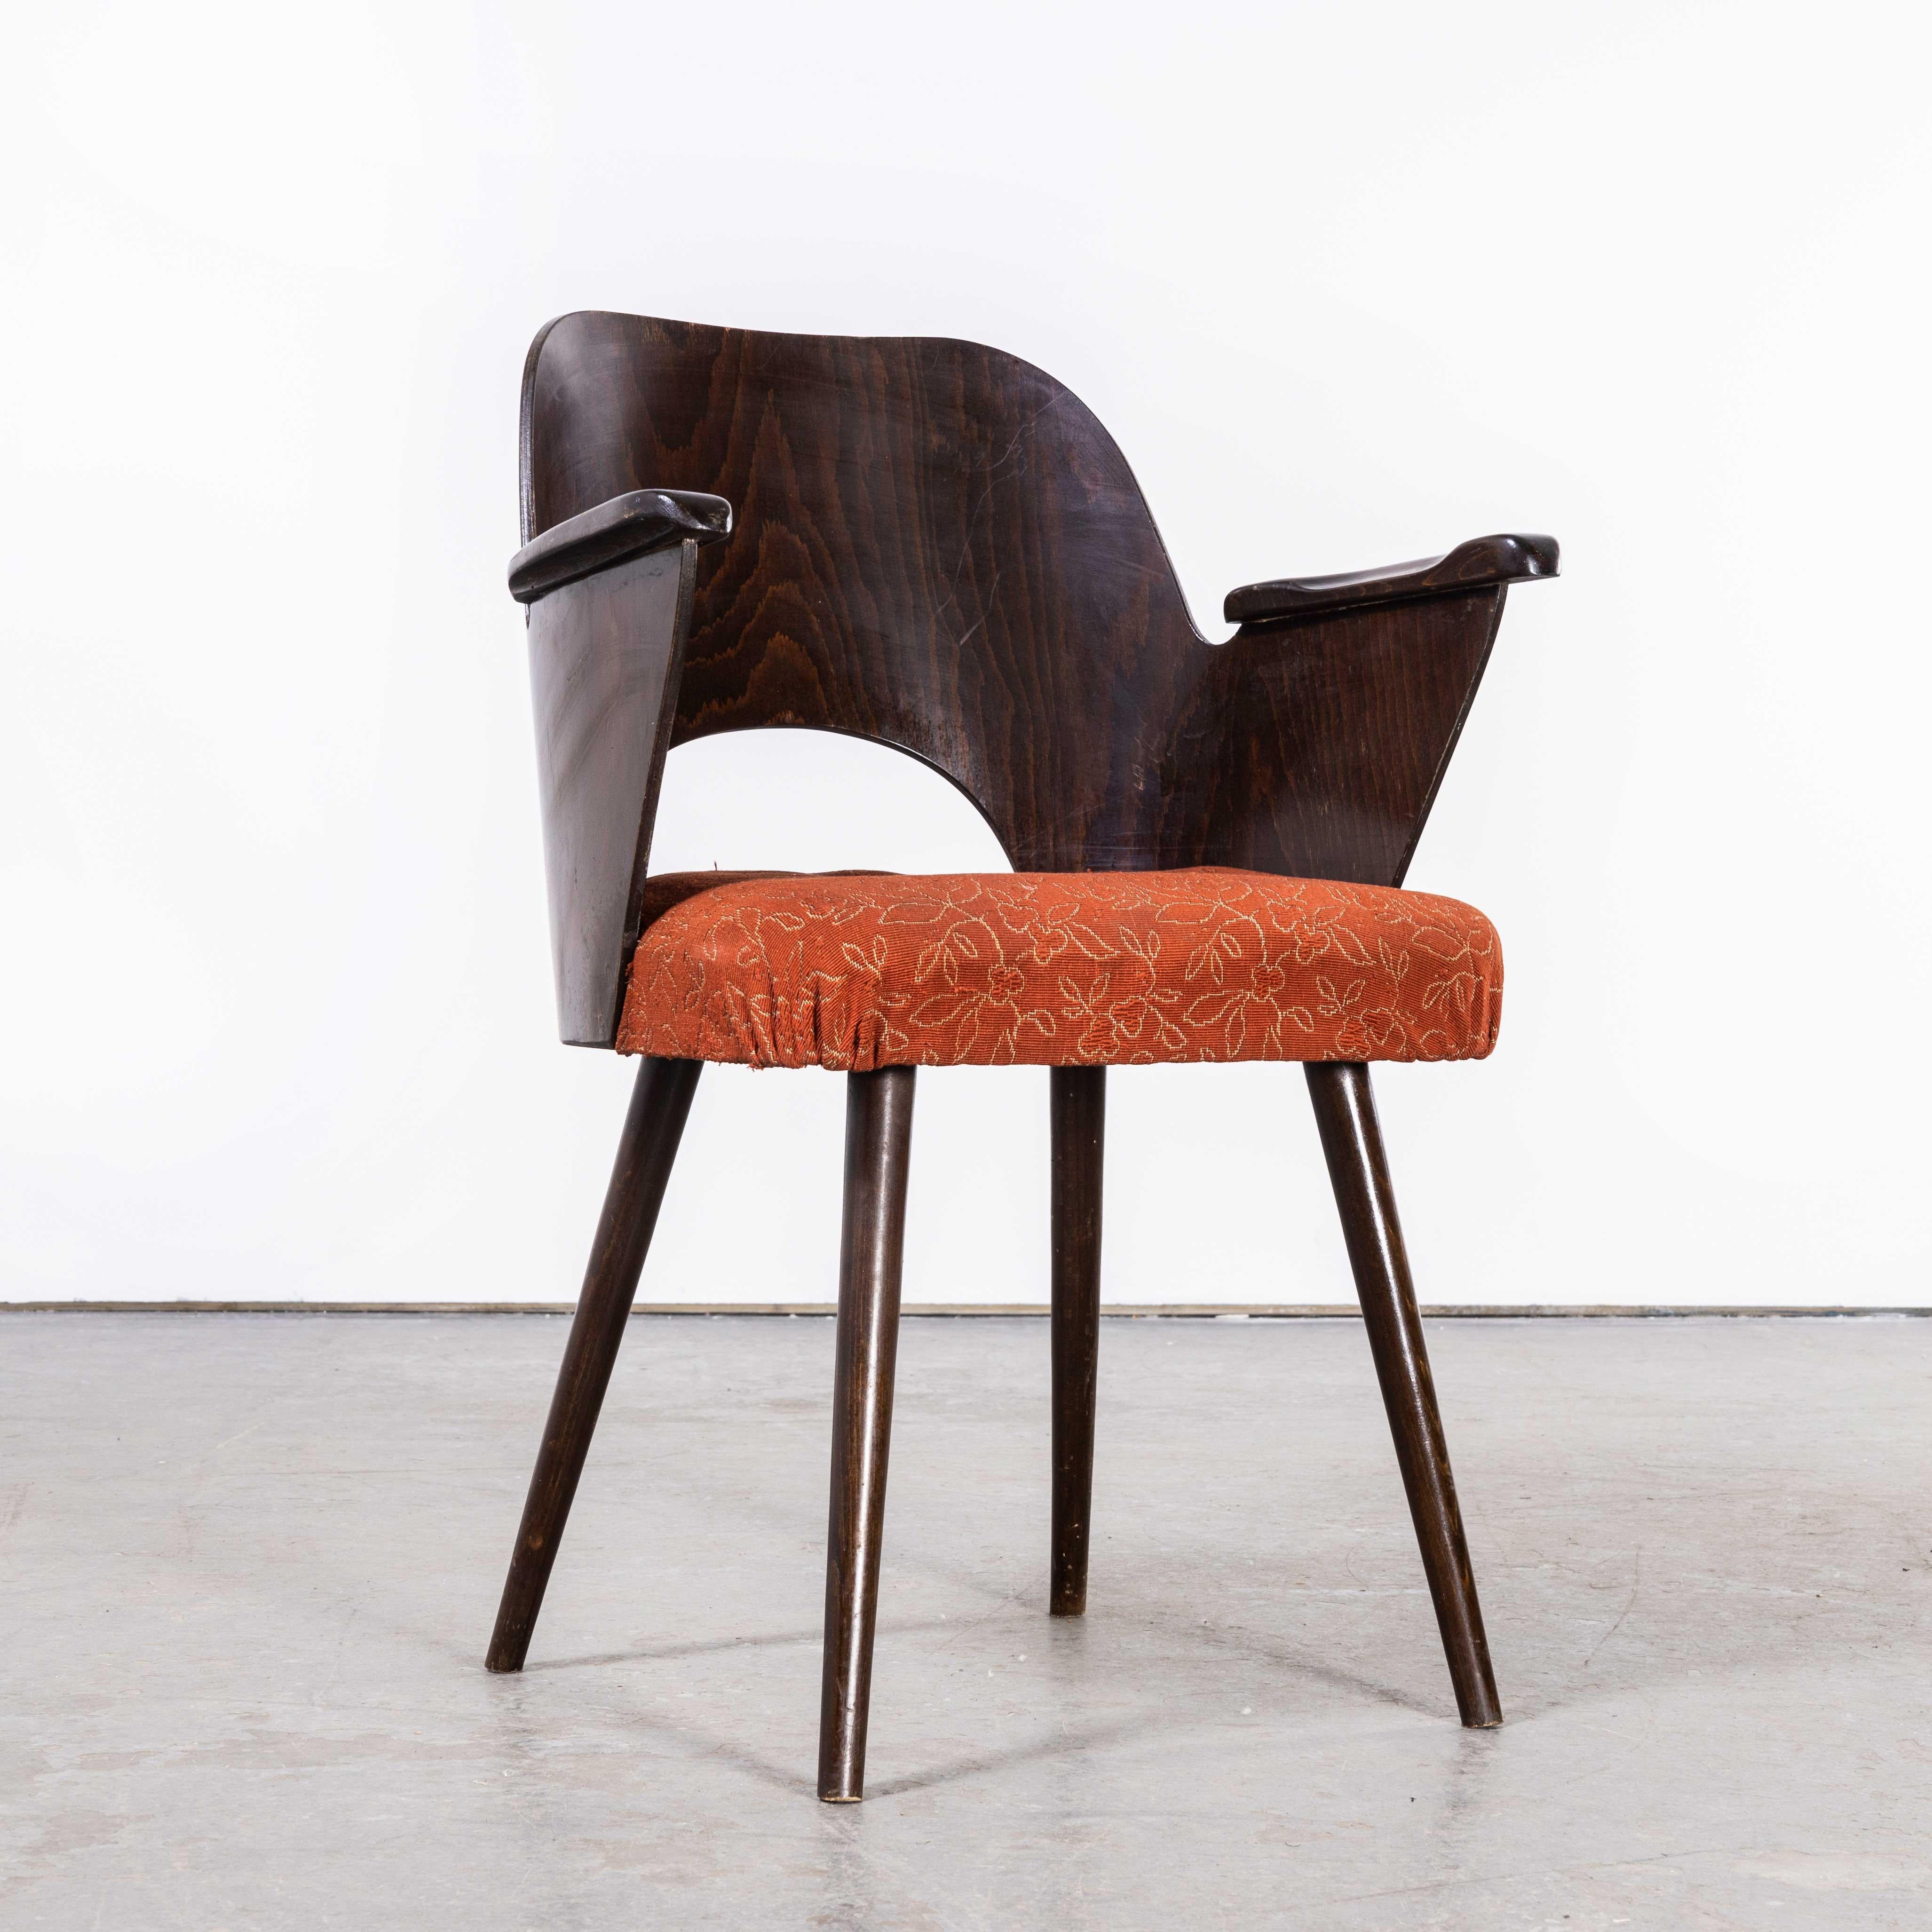 Czech 1950's Dark Walnut Upholstered Side Chair, Oswald Haerdt Model 515 '1923' For Sale